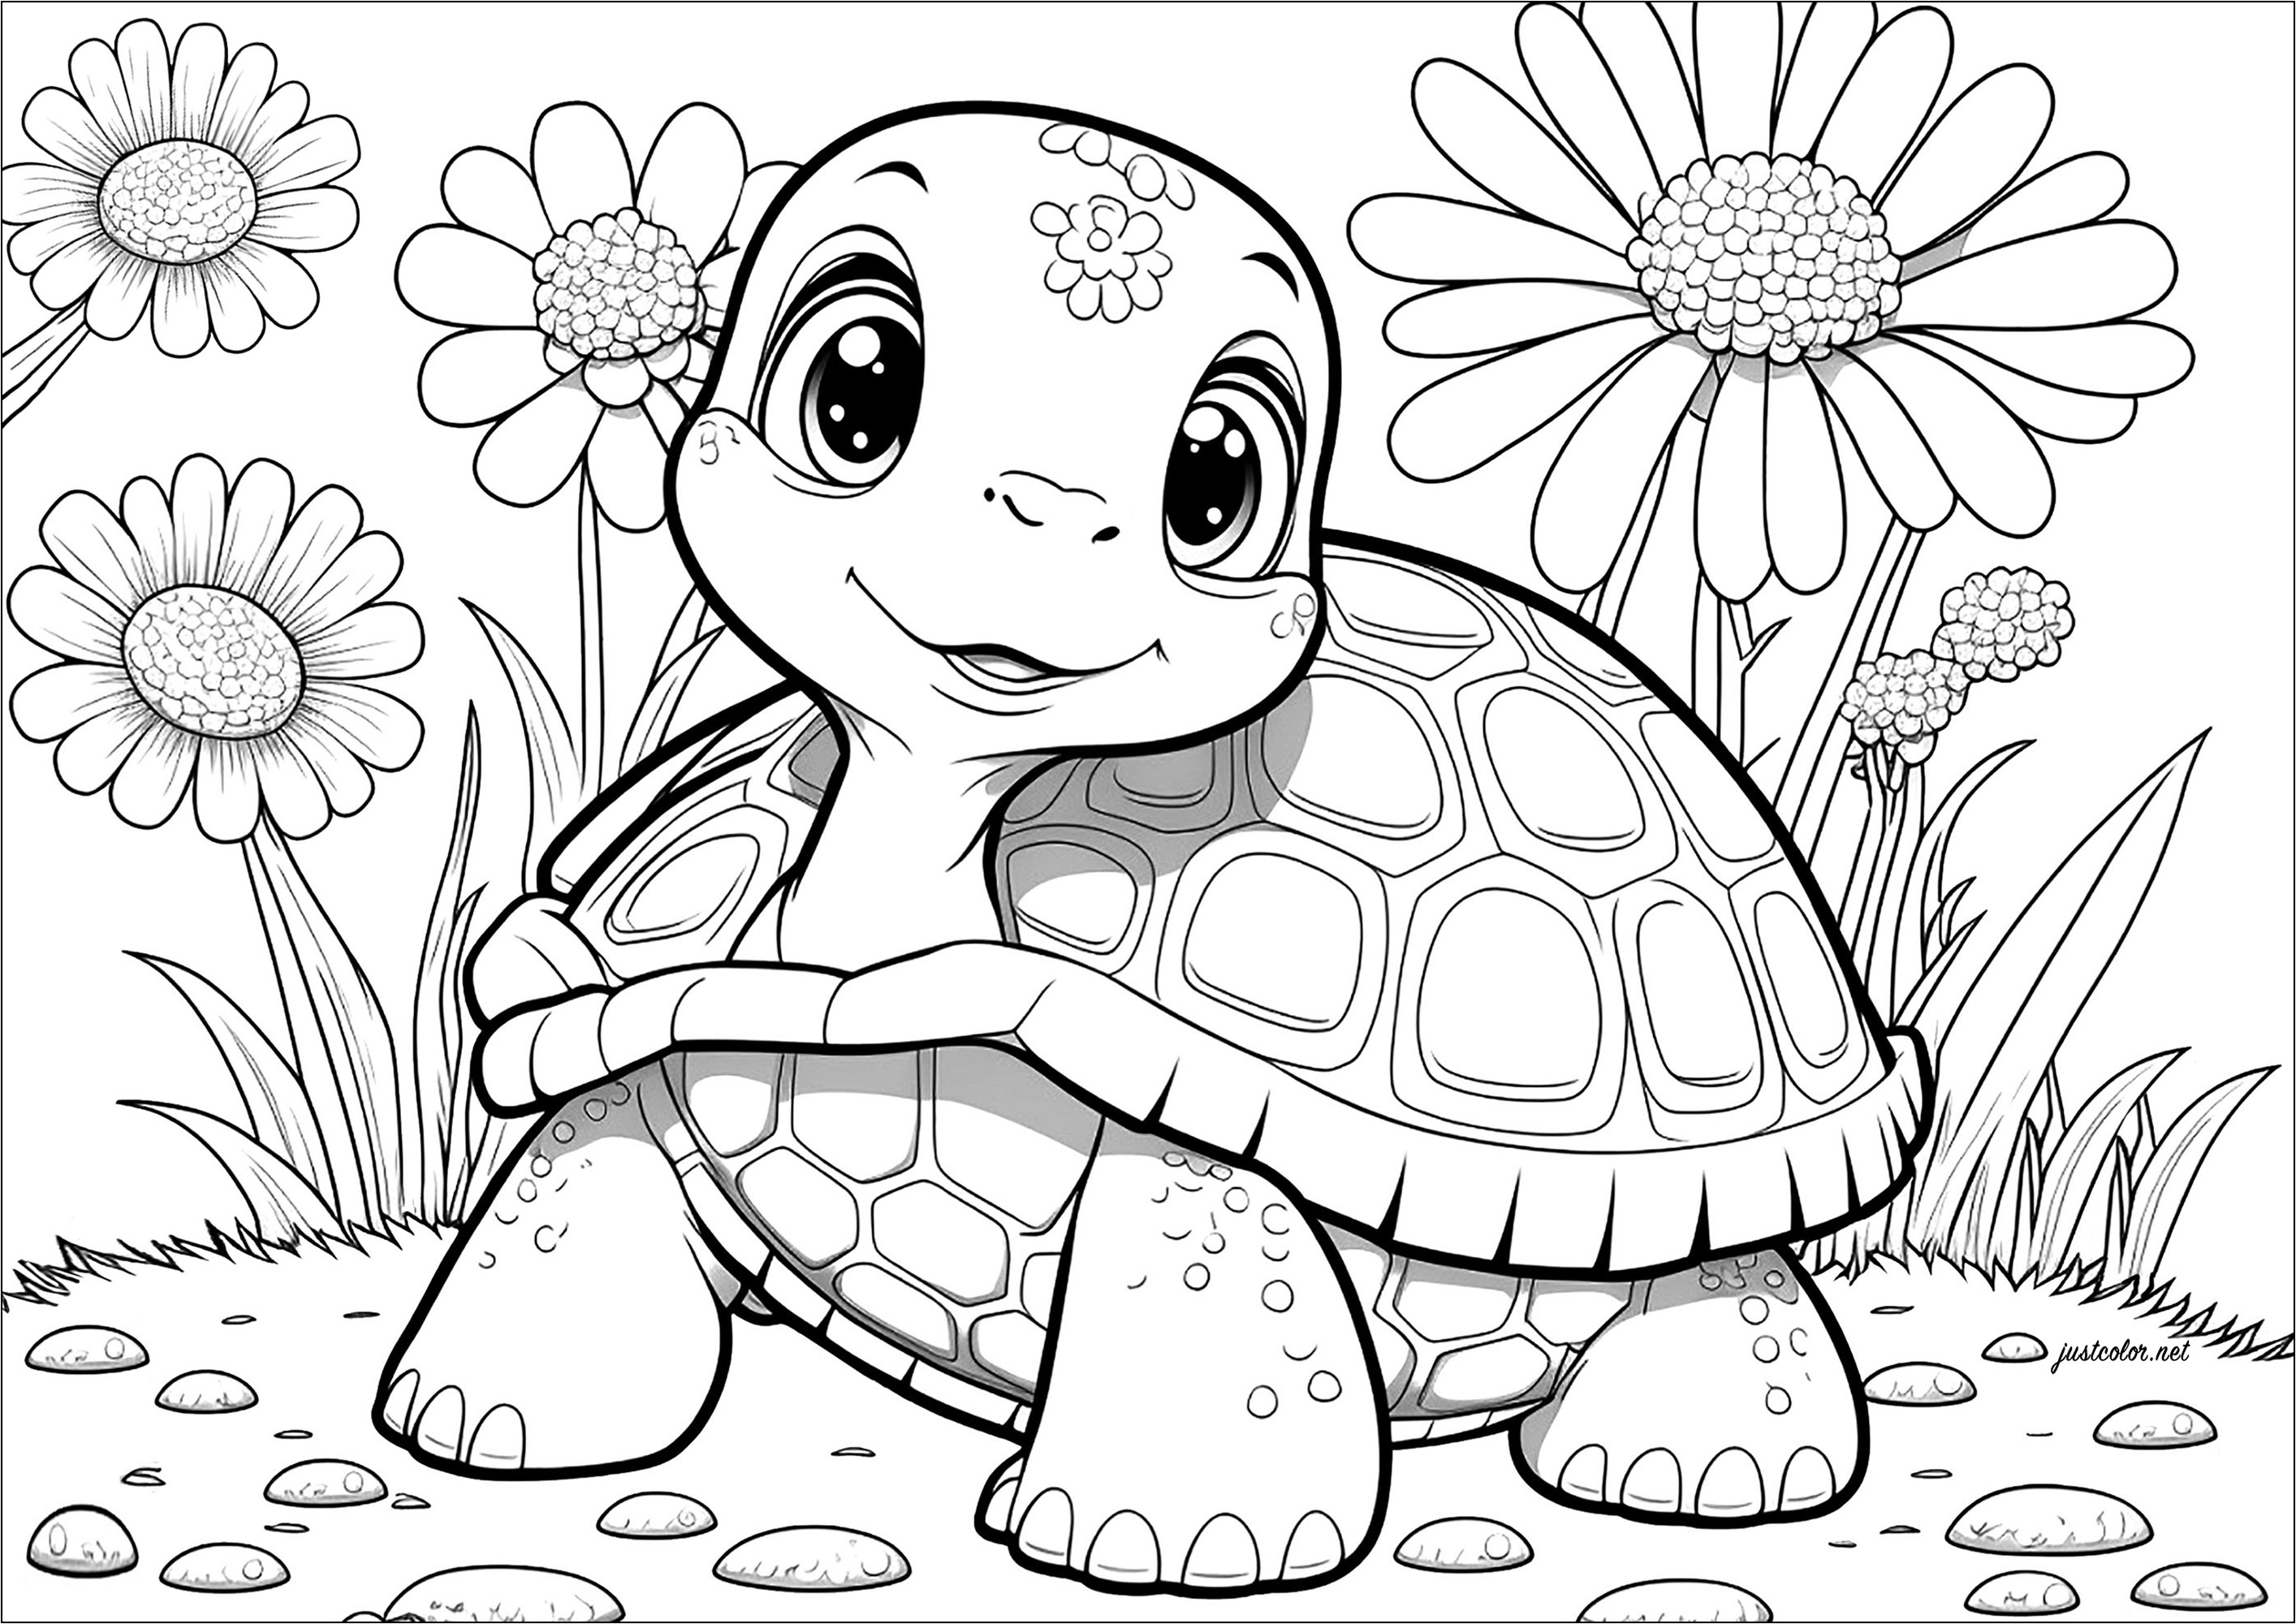 Une tortue très enfantine à colorier, mais beaucoup de détails !. Suivez cette tortue de terre dans ses aventures lentes mais sûres dans ce coloriage amusant.